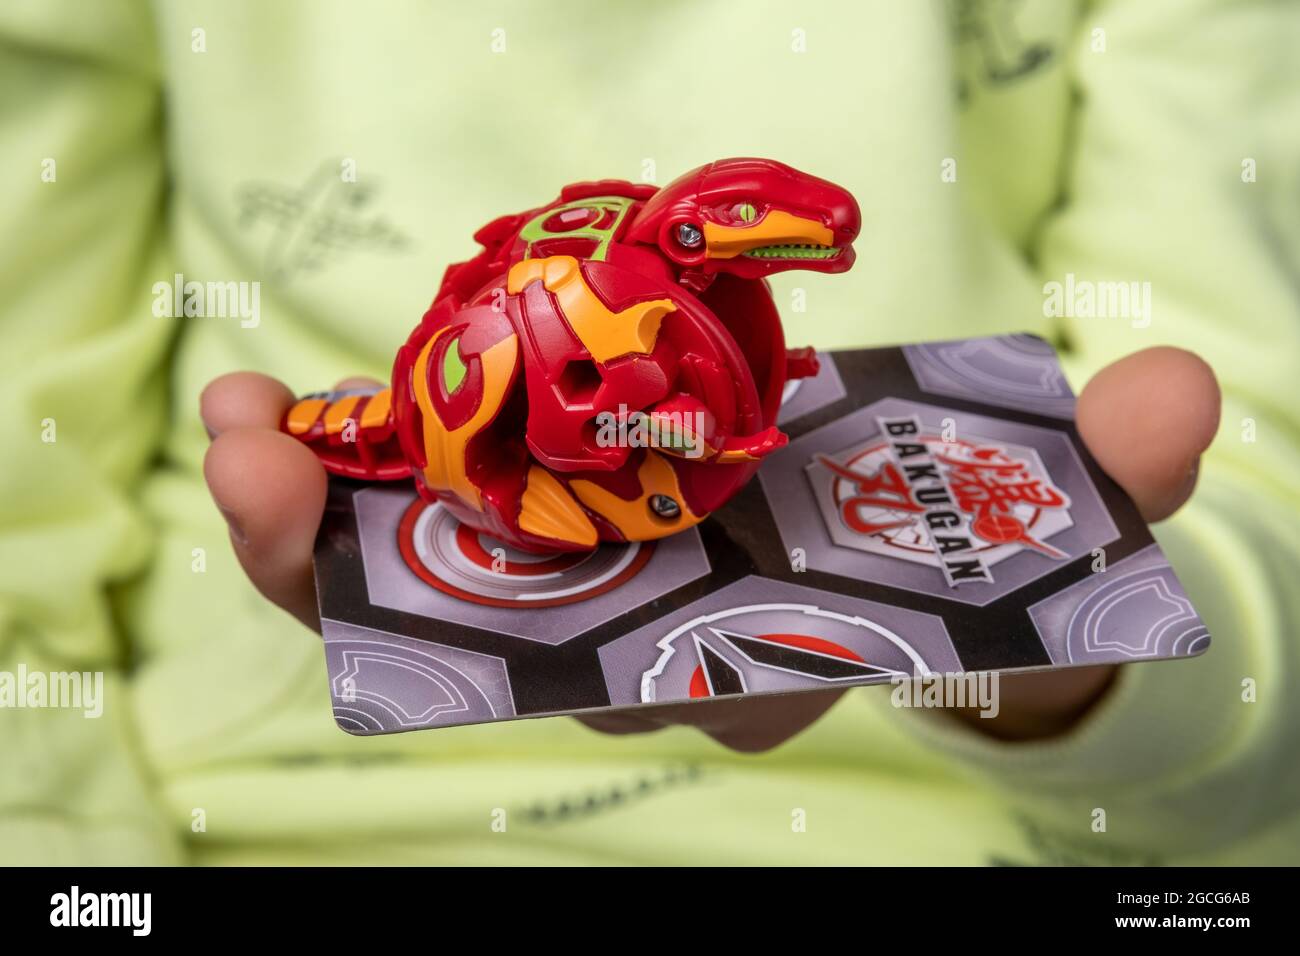 Bakugan ball jouet. Jouet transformé en forme de dragon, tenir dans la main  de l'enfant avec une carte magnétique. Stafford, Royaume-Uni, 8 août 2021  Photo Stock - Alamy